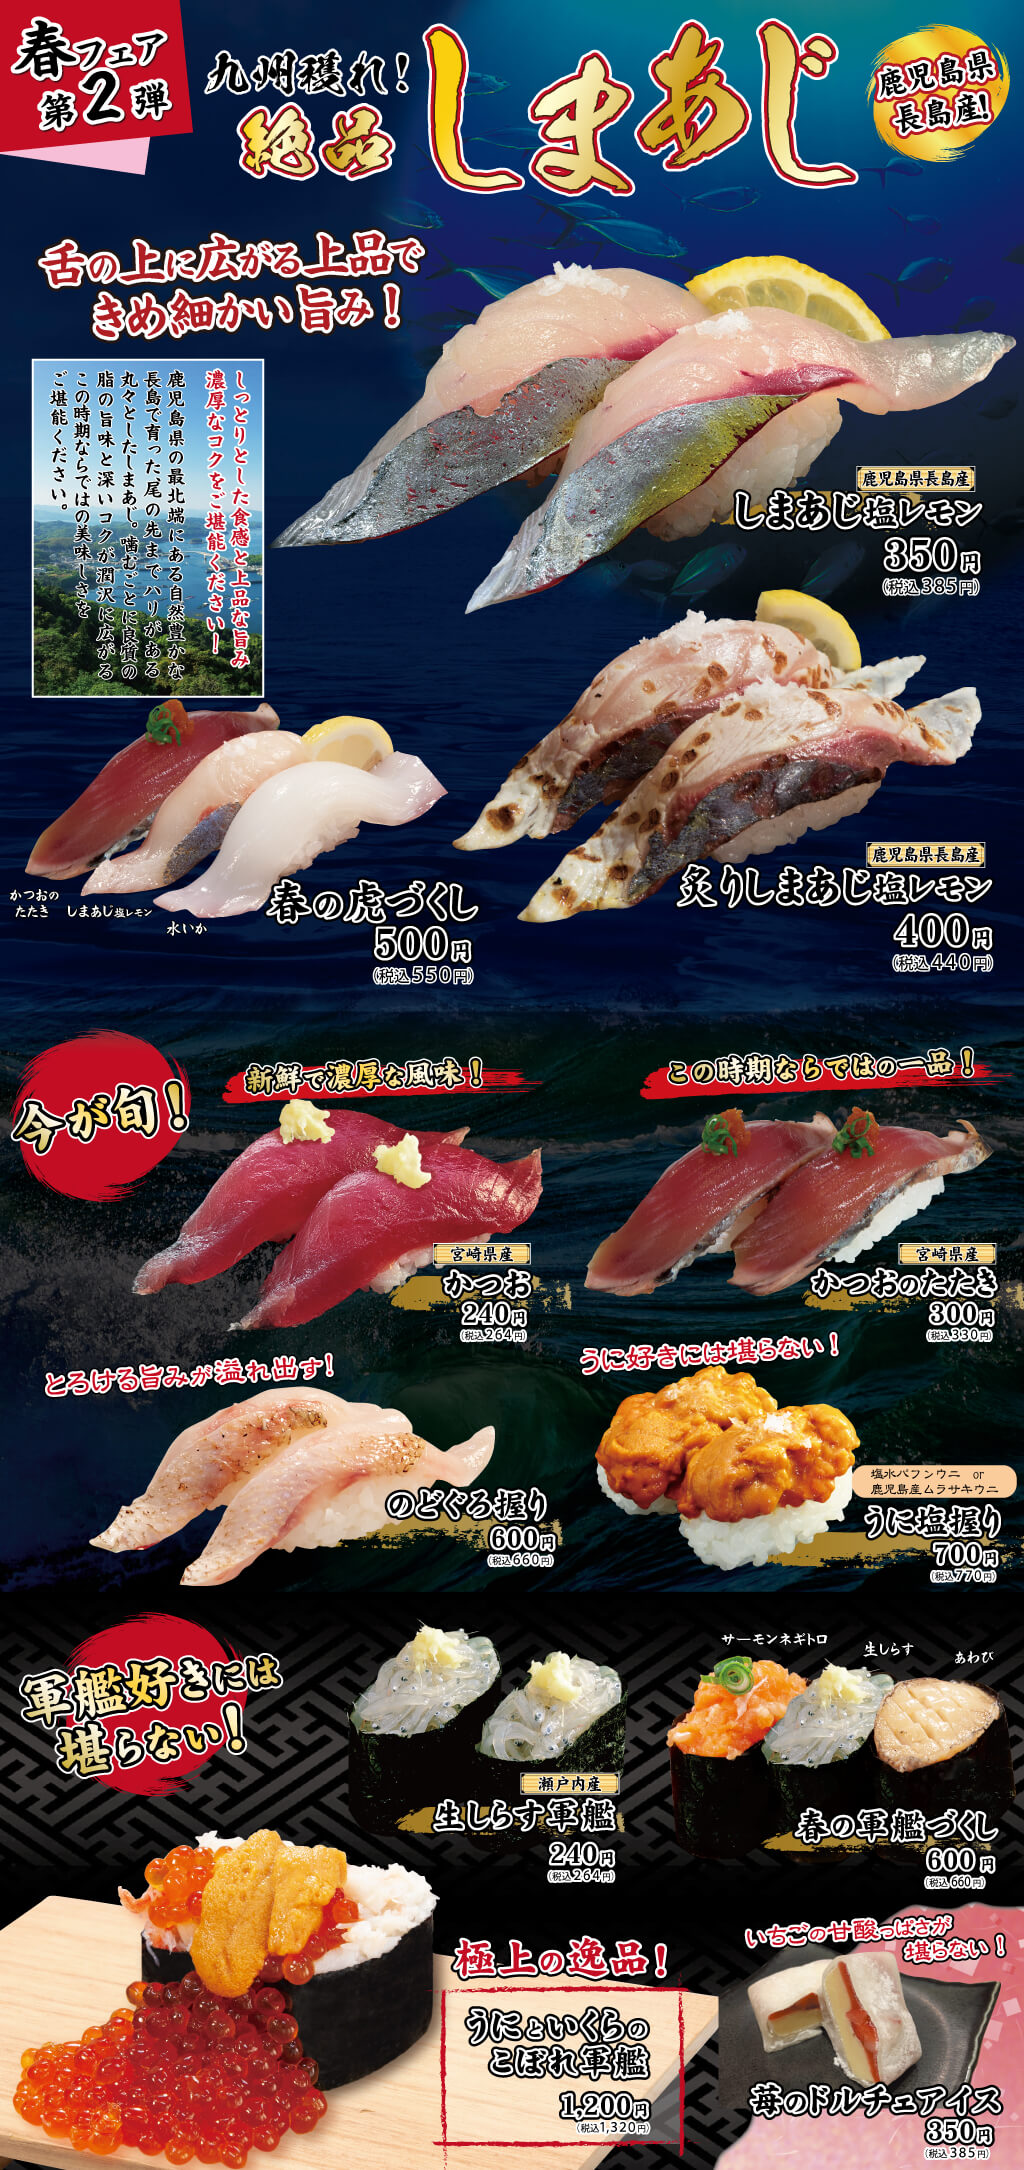 九州獲れ 絶品しまあじフェア開催 4月23日から お知らせ 究極 回転寿司 寿司虎